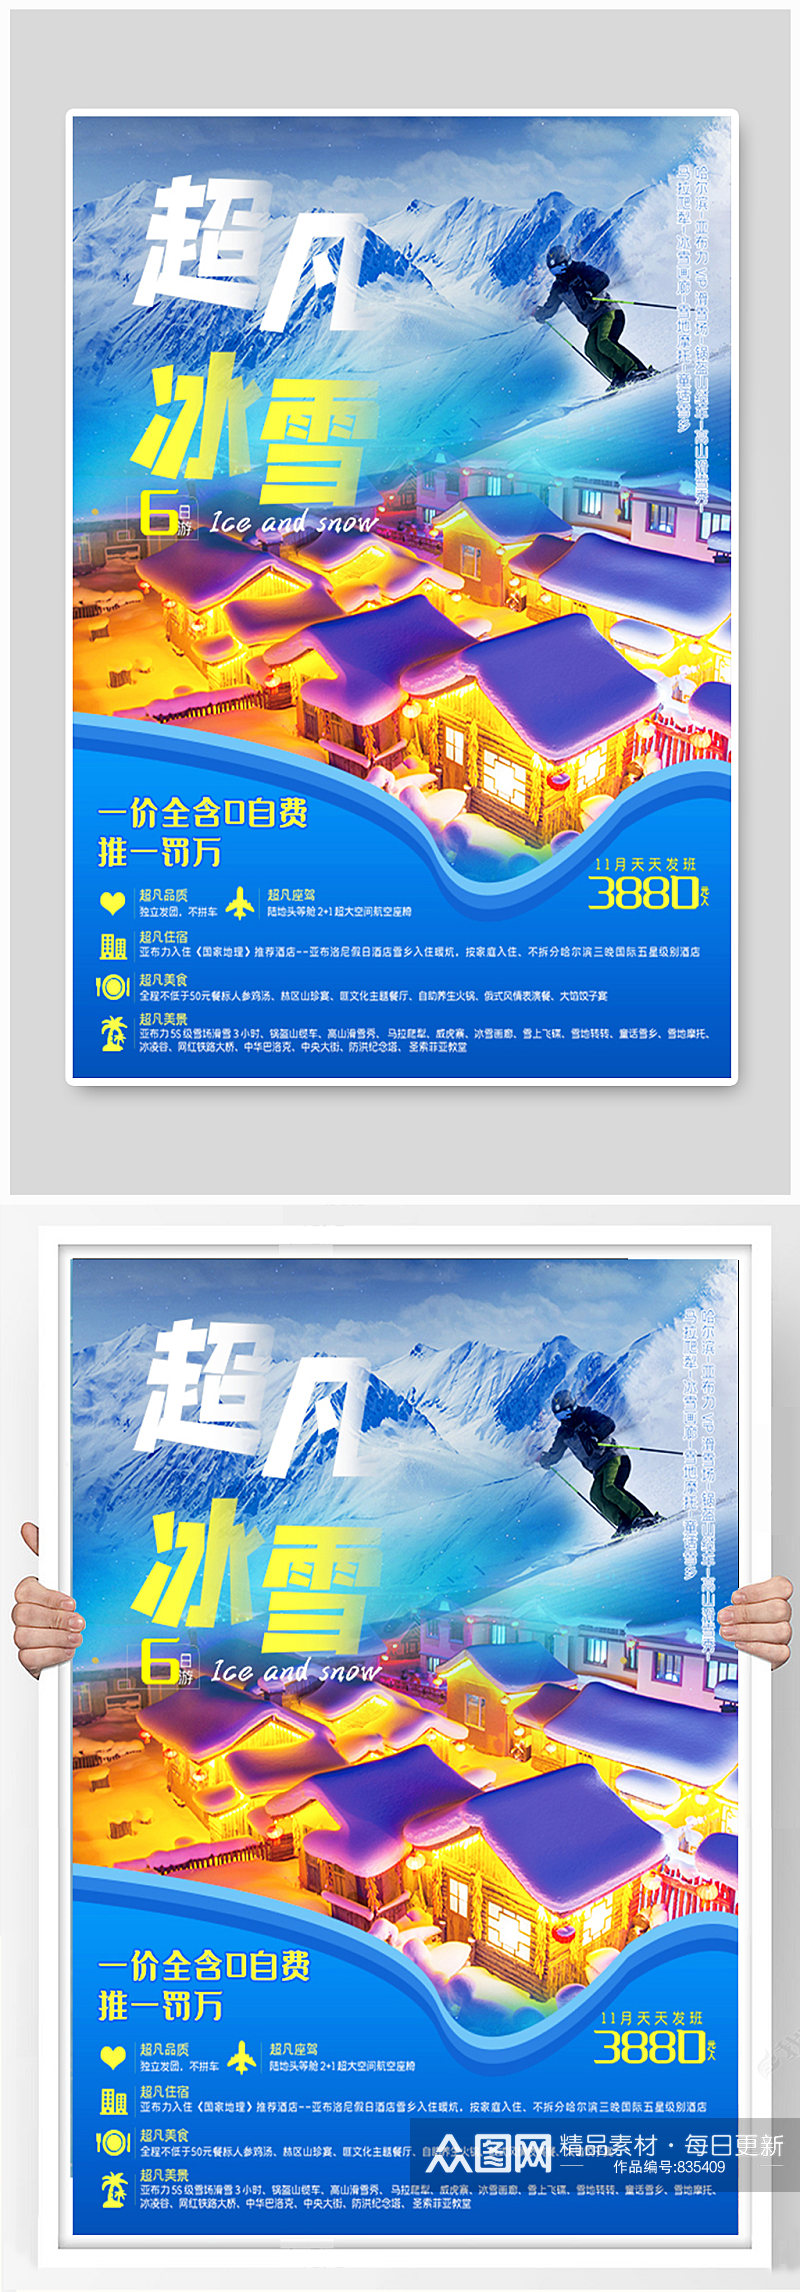 蓝色雪乡旅游宣传海报素材